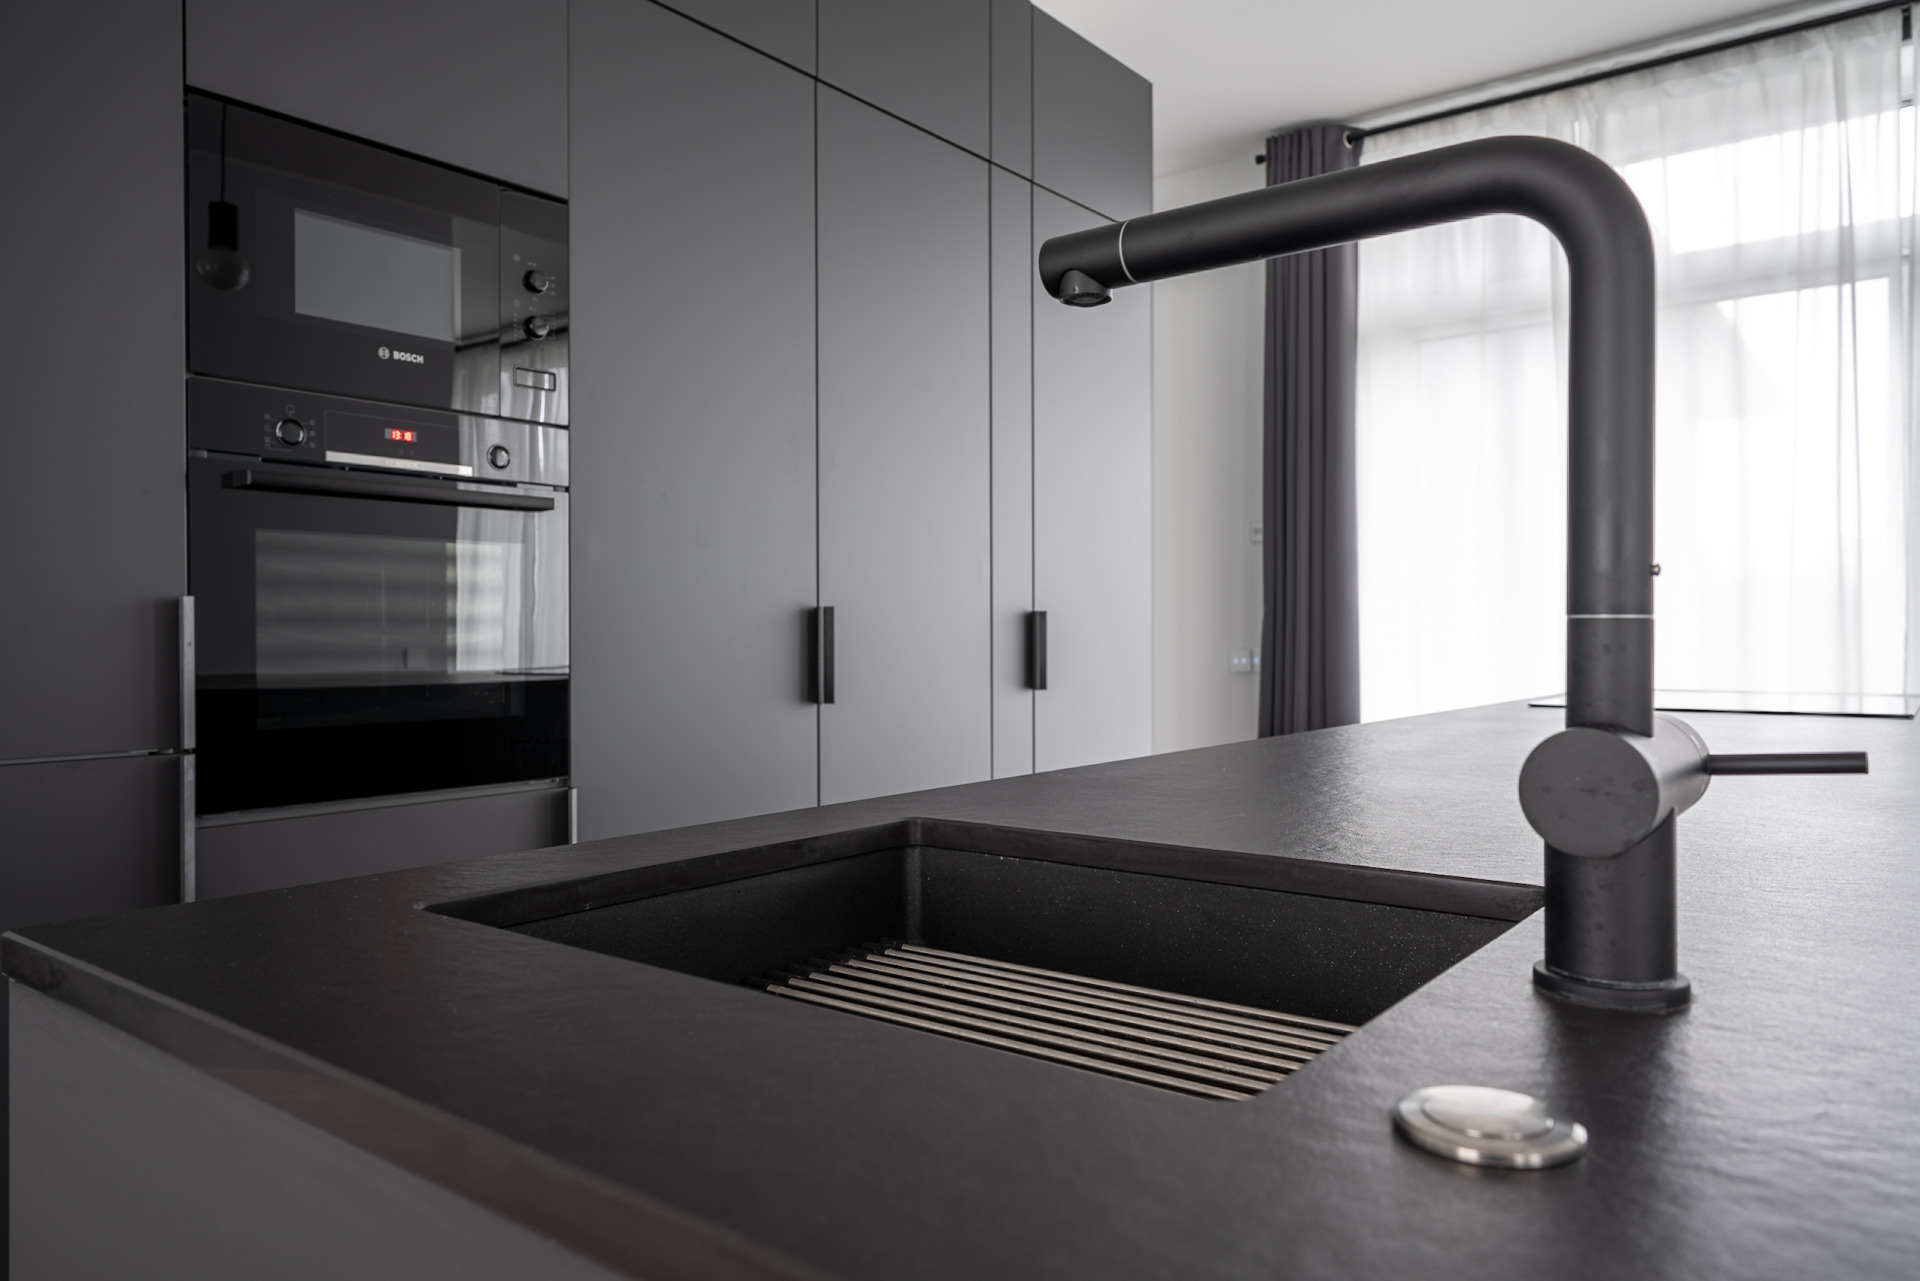 Кухонная мебель темно-серого цвета с матовыми фасадами, каменной поверхностью и интегрированной мойкой